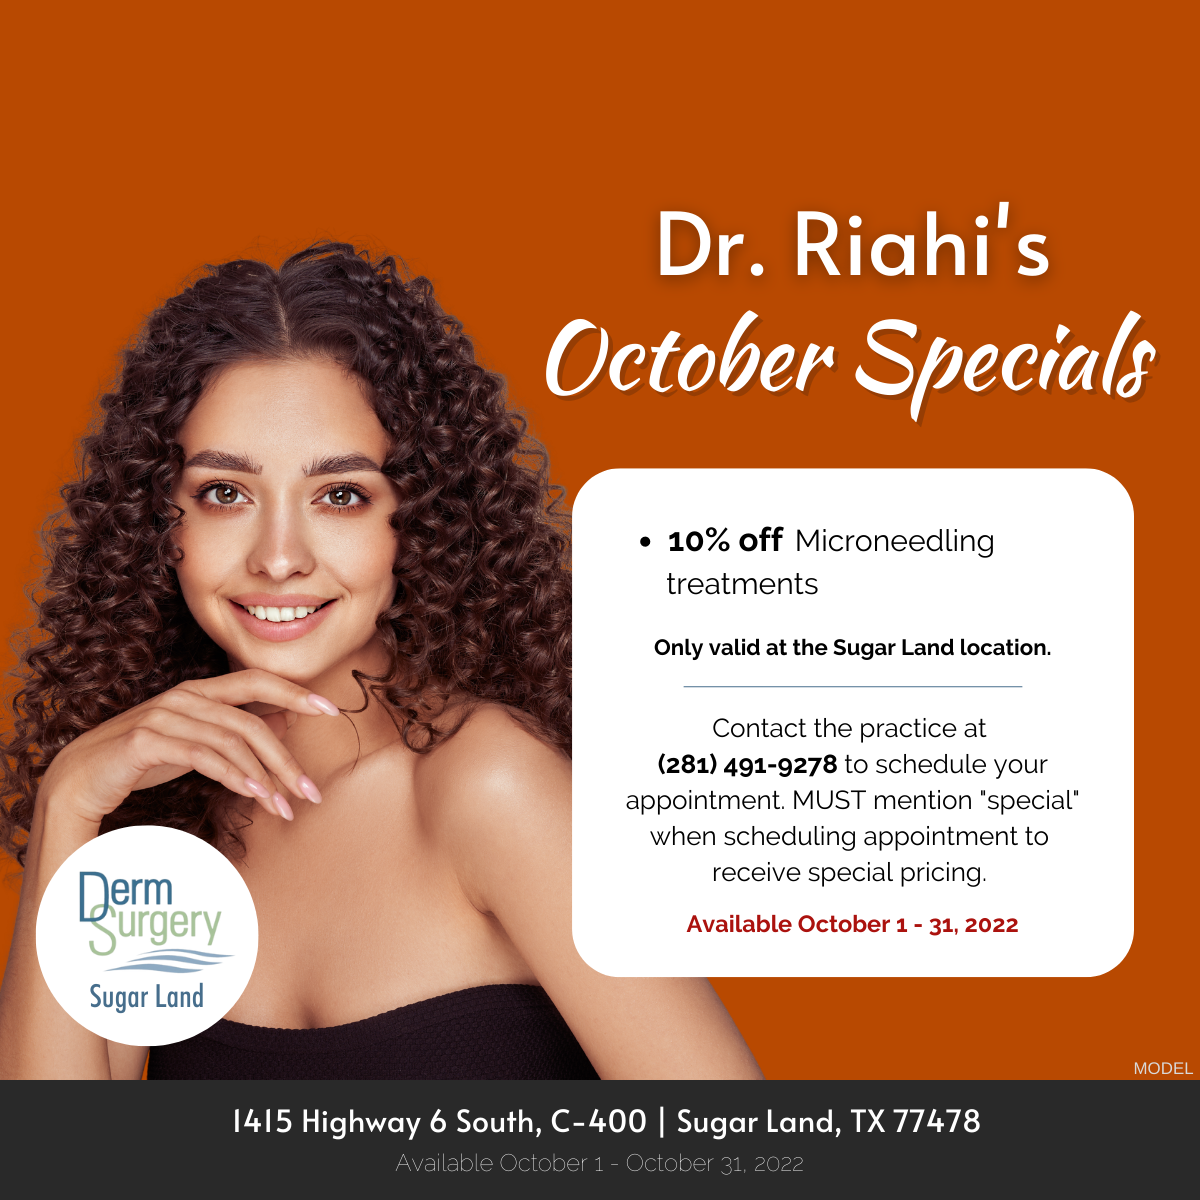 Dr. Riahi's October Specials 2022